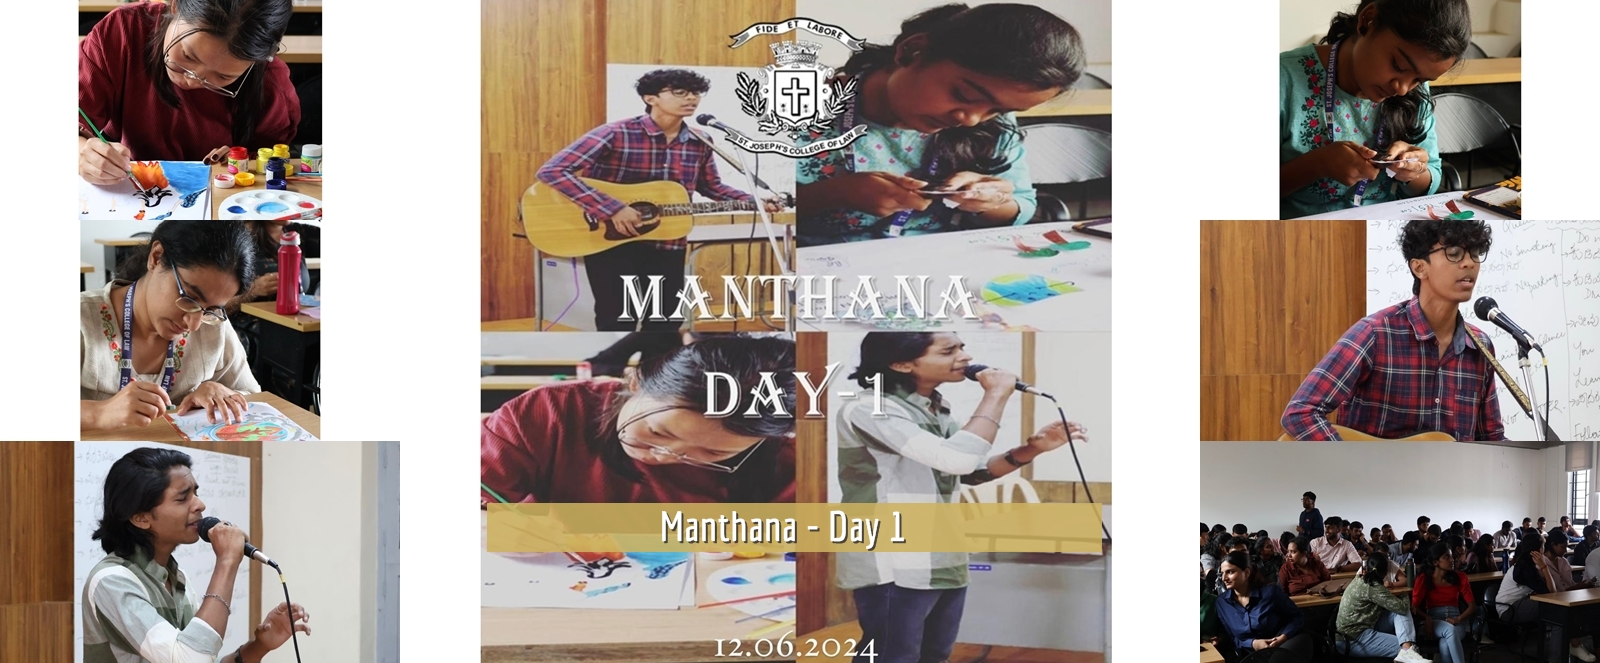 Manthana - Day 1